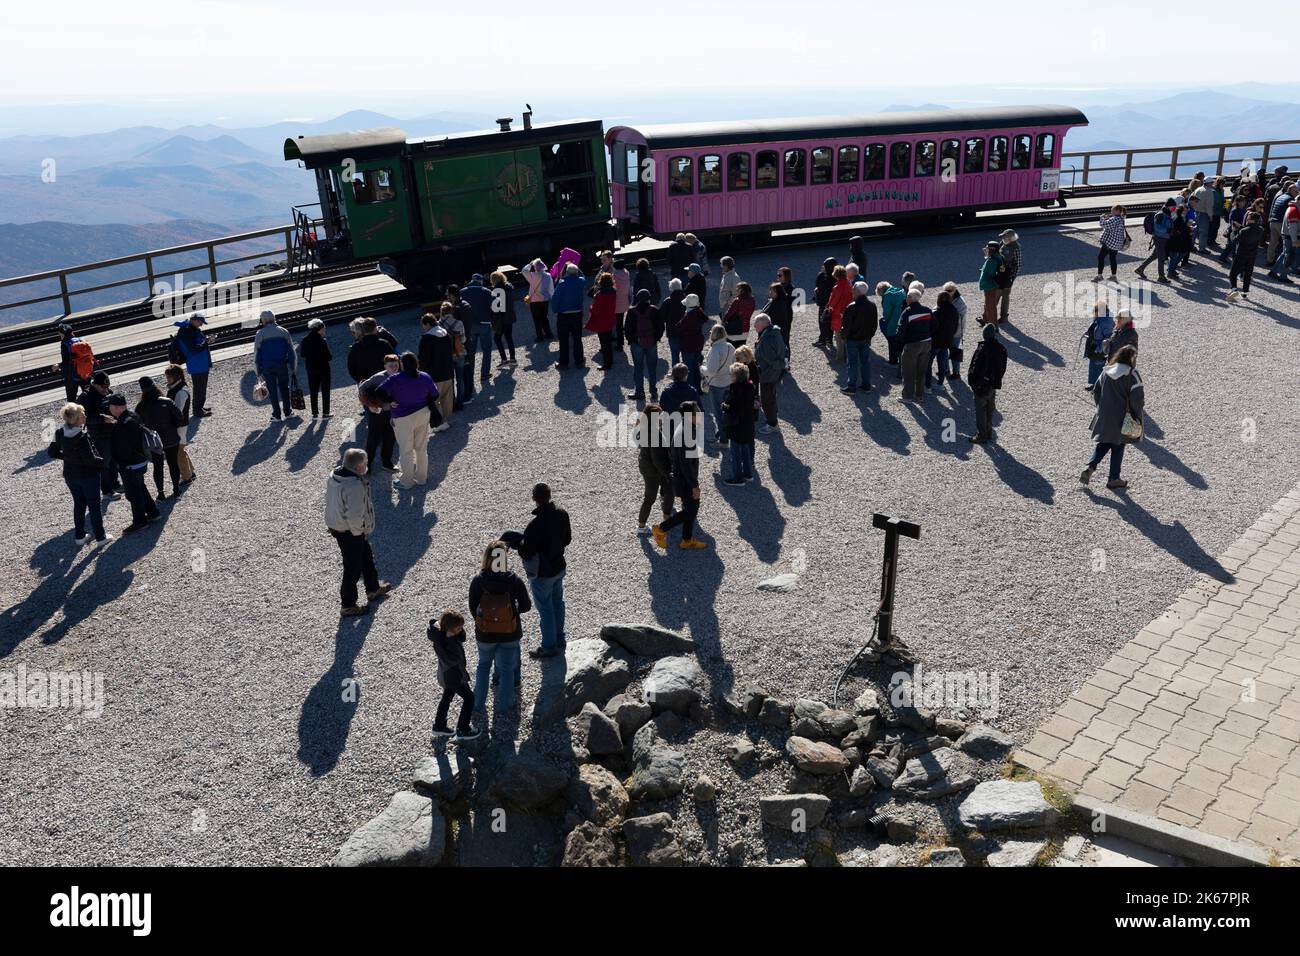 Auf dem Gipfel der Mount Washington Cog Railway warten viele Passagiere, um in Züge zu steigen Stockfoto